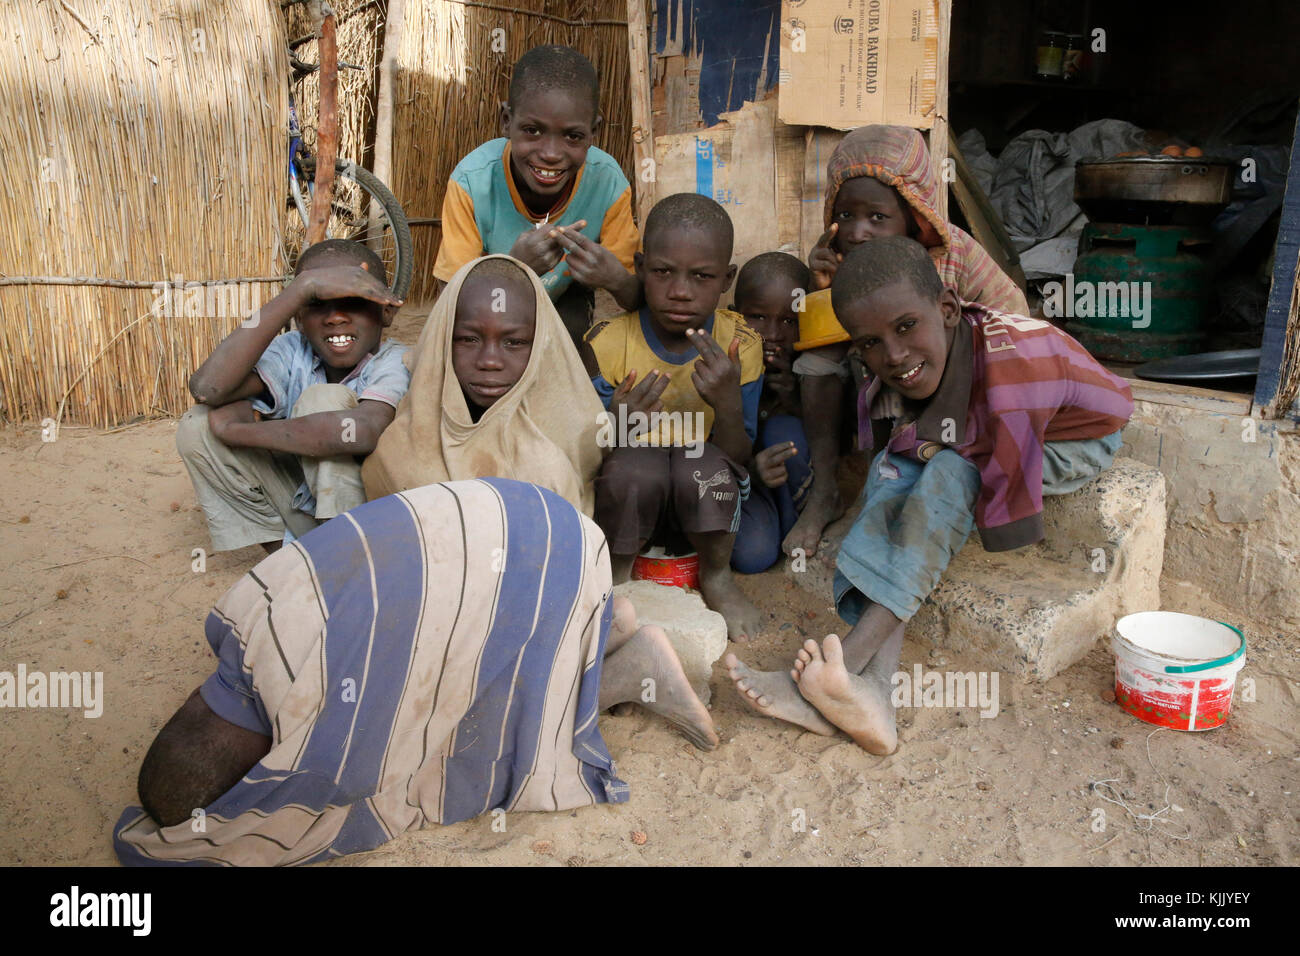 Talibes in Saint Louis (ragazzi che vivere e studiare in scuole islamiche a mendicare per le strade). Il Senegal. Foto Stock